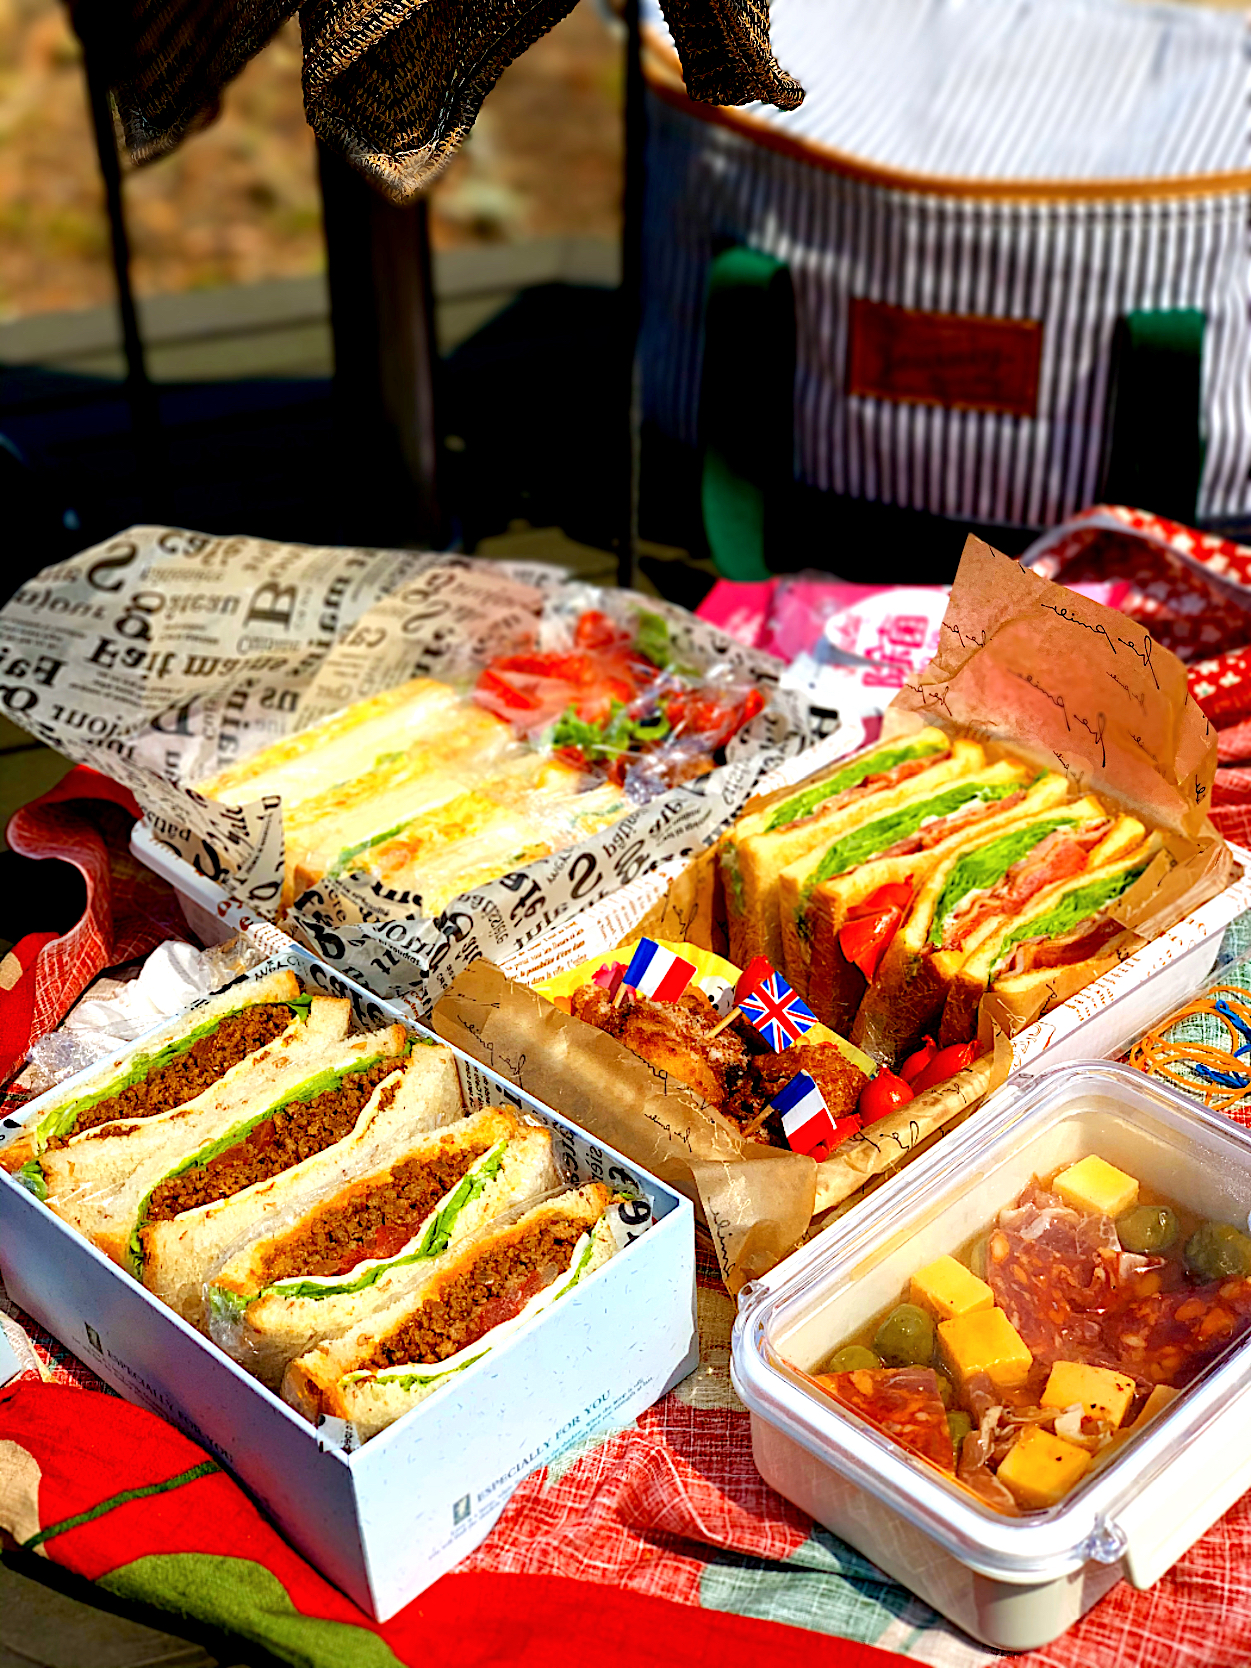 ピクニックlunch サンドイッチ弁当 お花見bentoグランプリ ヤマサ醤油株式会社